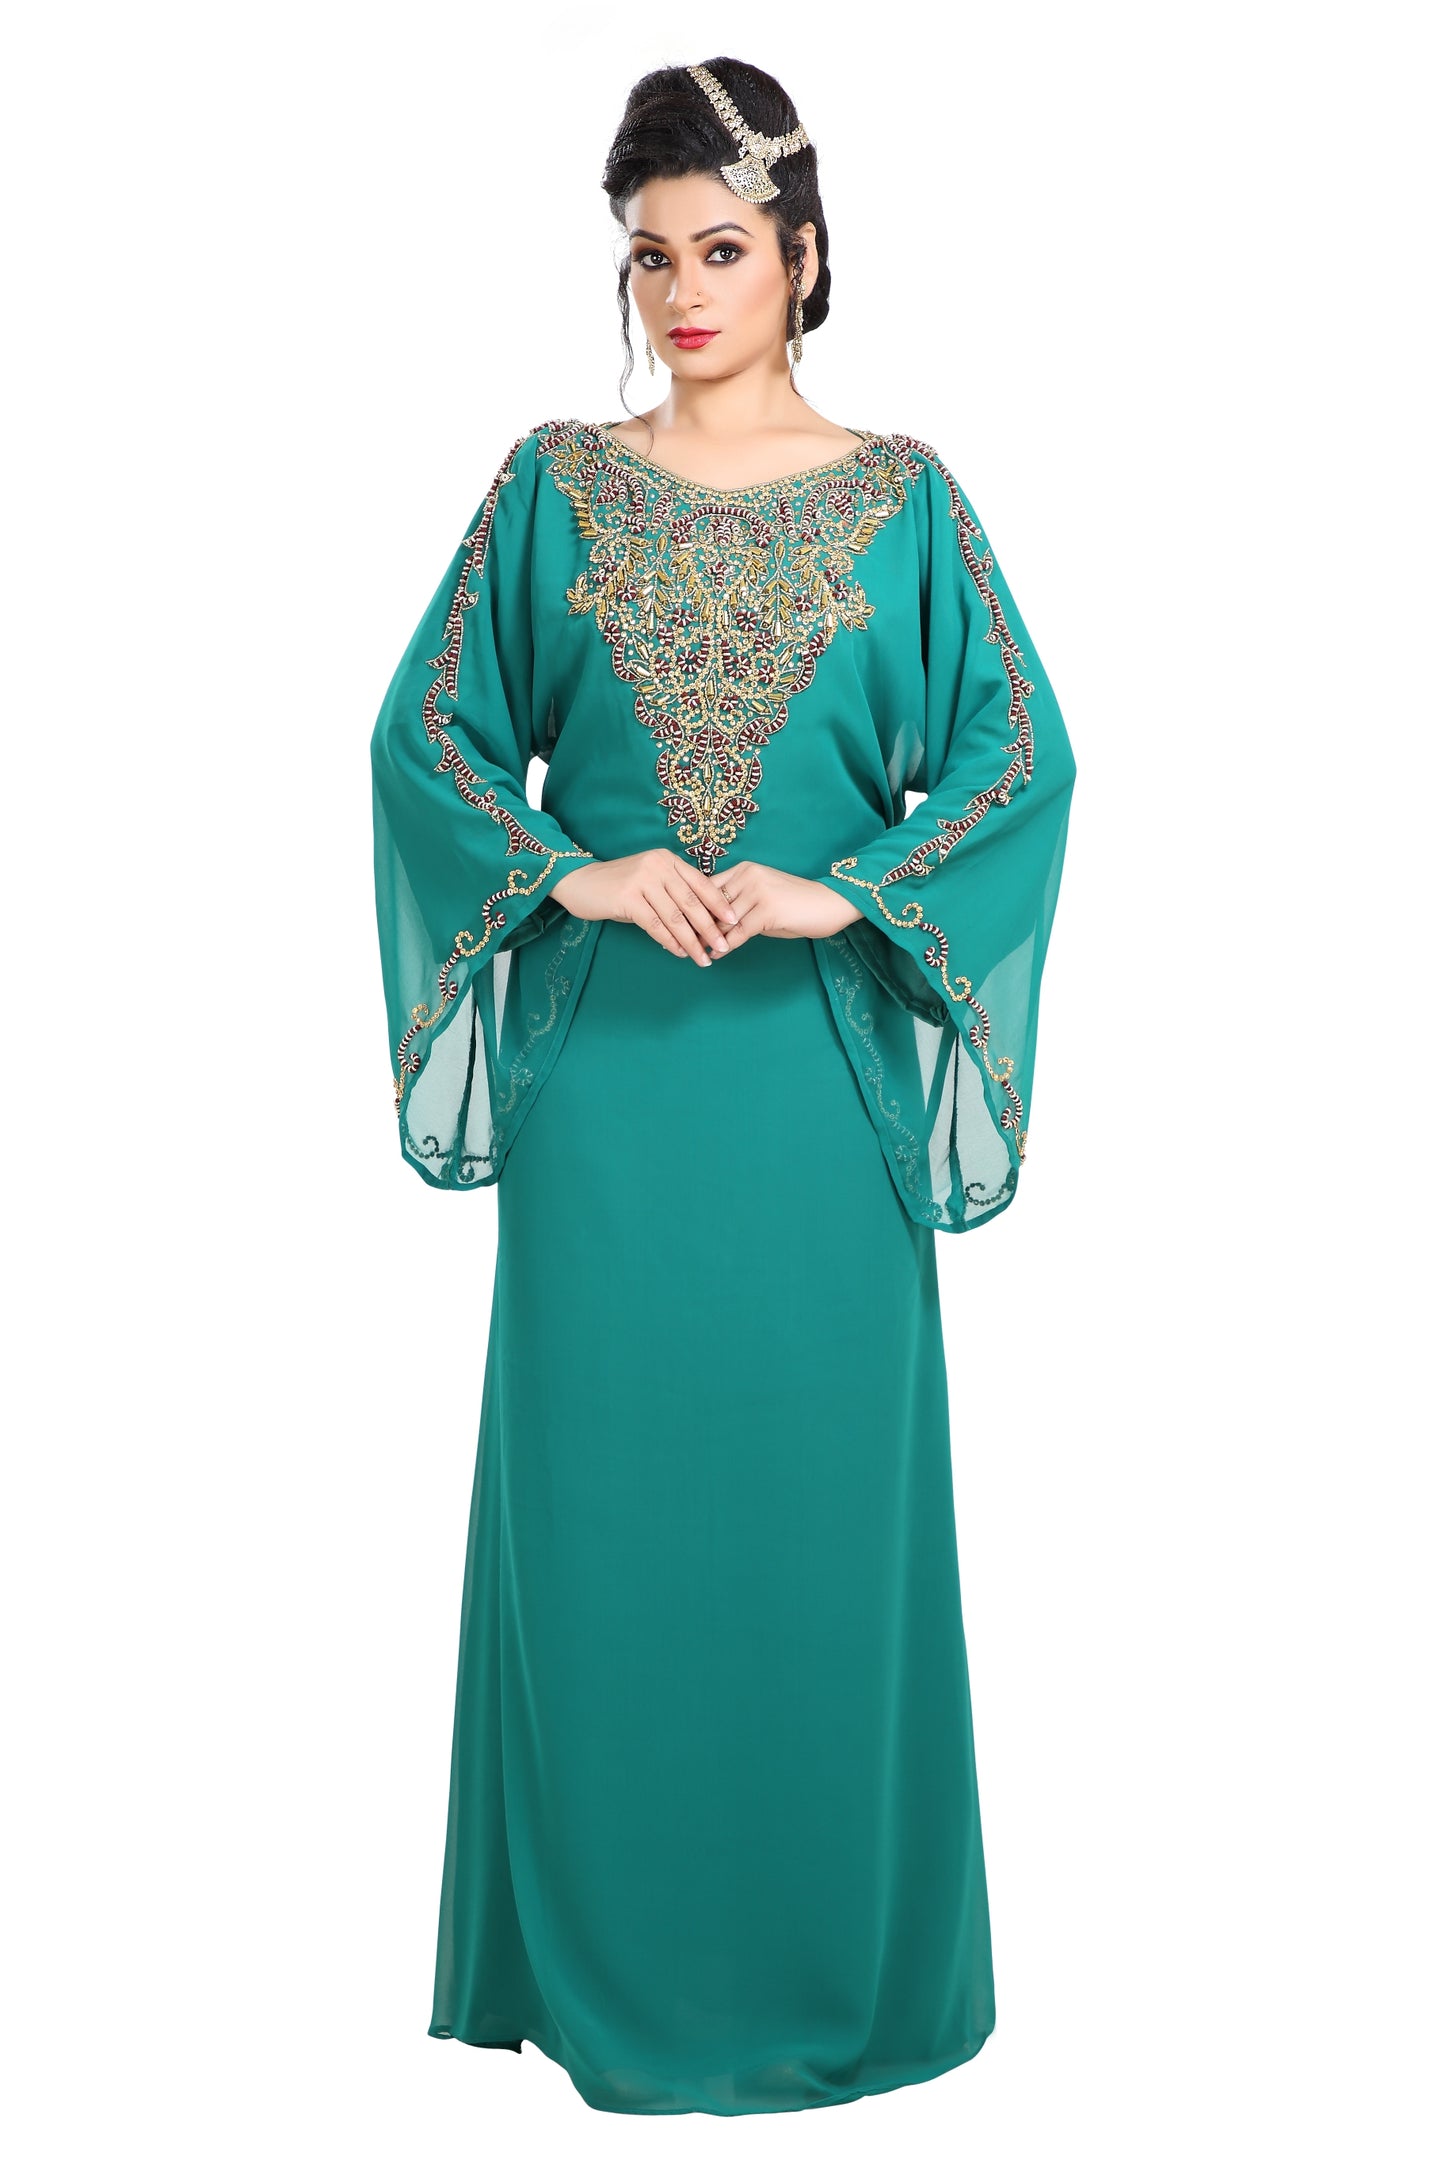 Arabian Dresses at best price in New Delhi by Bijou Tiffany | ID: 2821550555